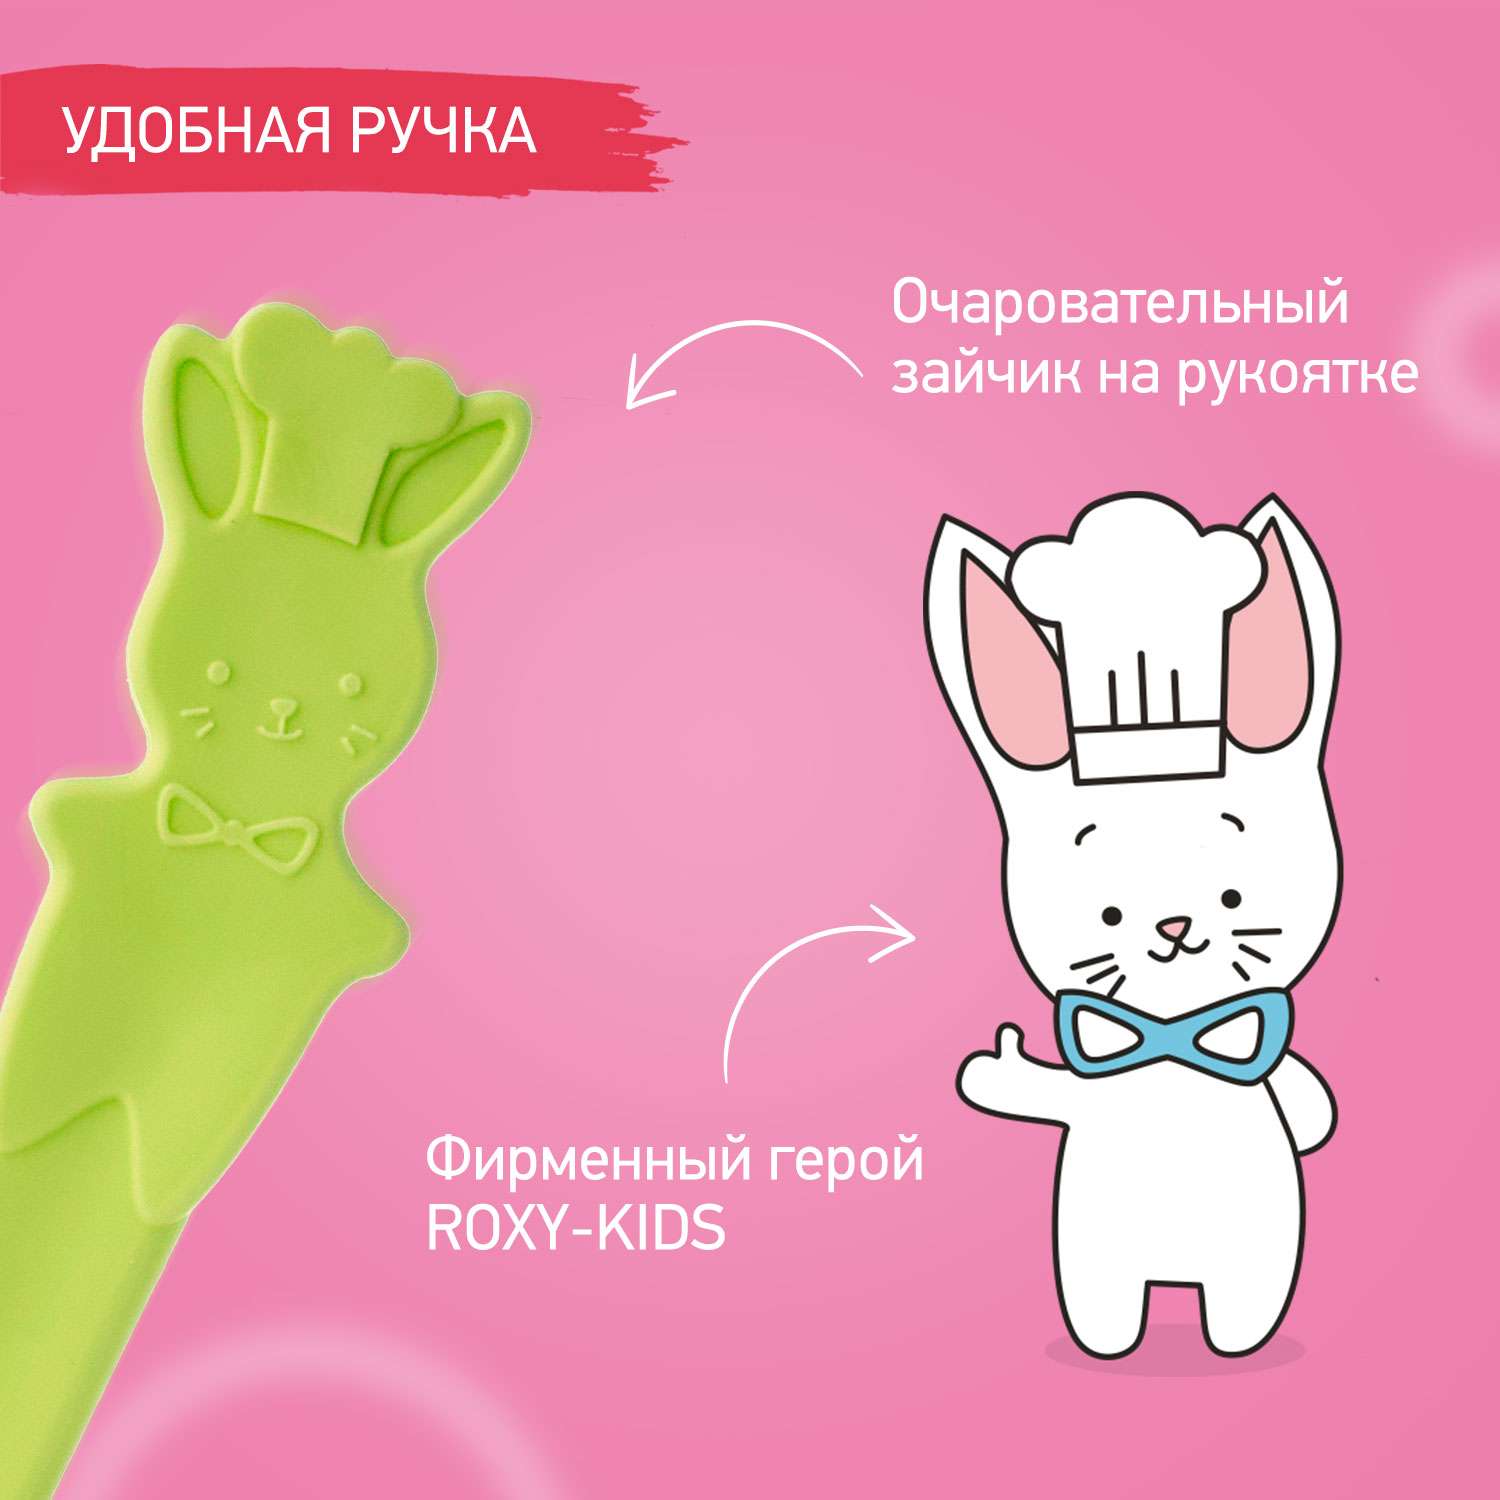 Набор ложек ROXY-KIDS для первого прикорма bunny cook цвет зеленый - фото 6